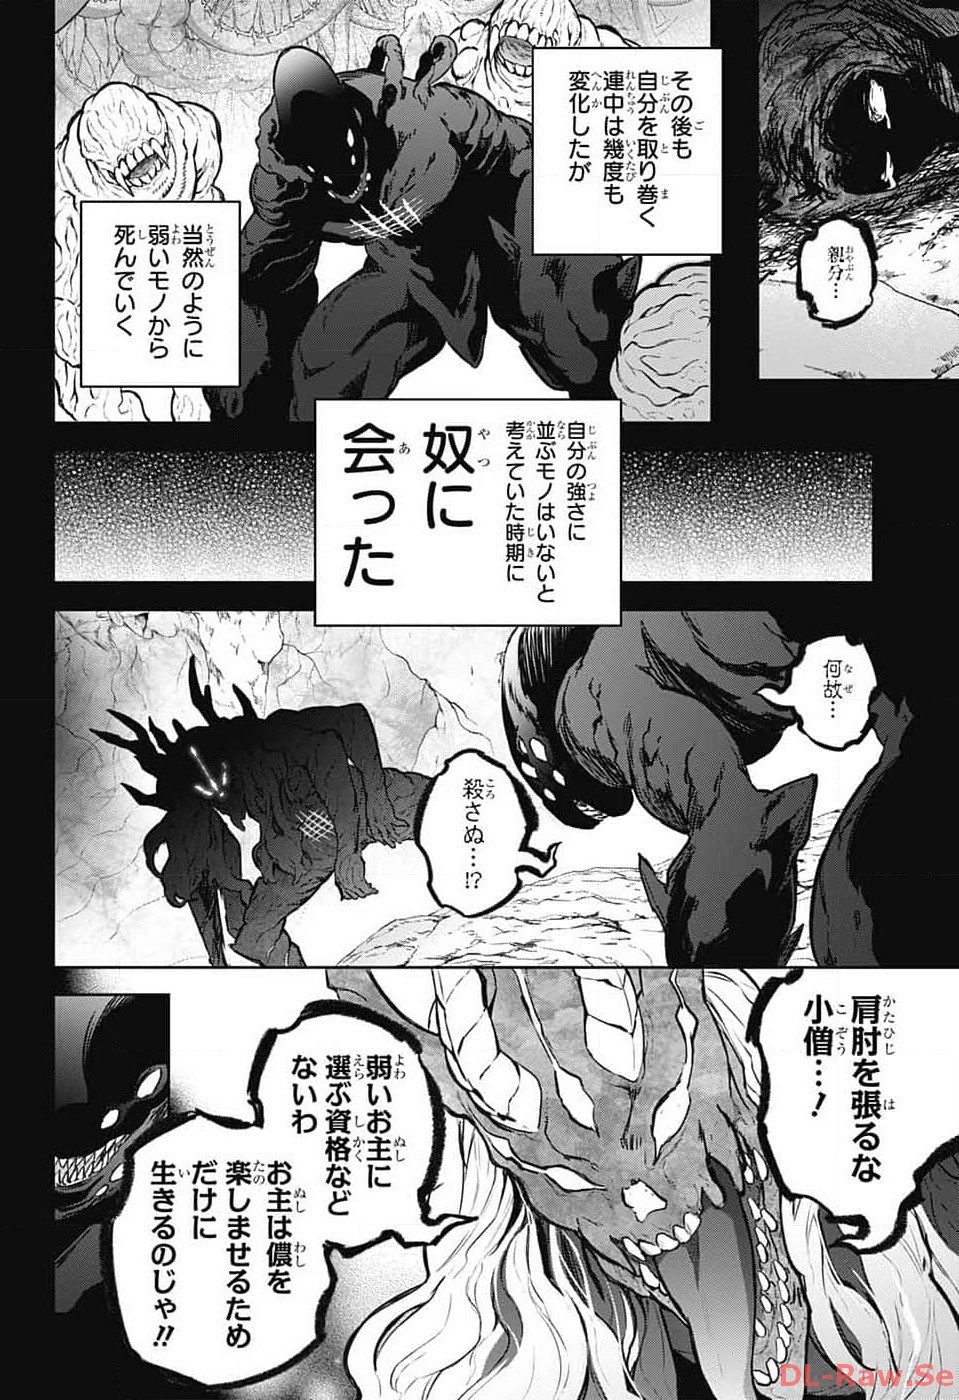 Sousei no Onmyouji - Chapter 126 - Page 4